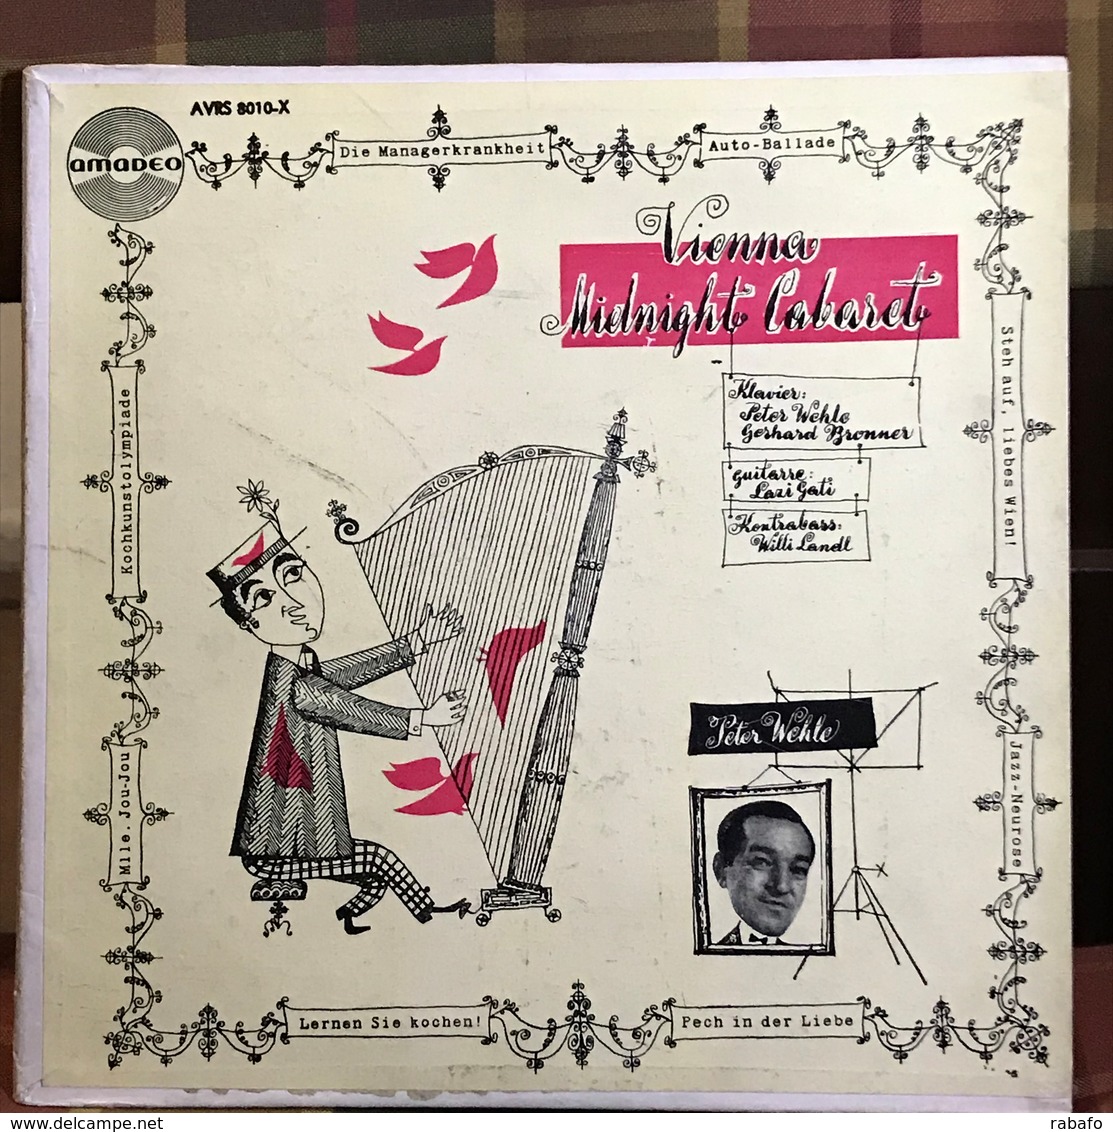 LP Argentino De Peter Wehle Año 1958 - Humor, Cabaret